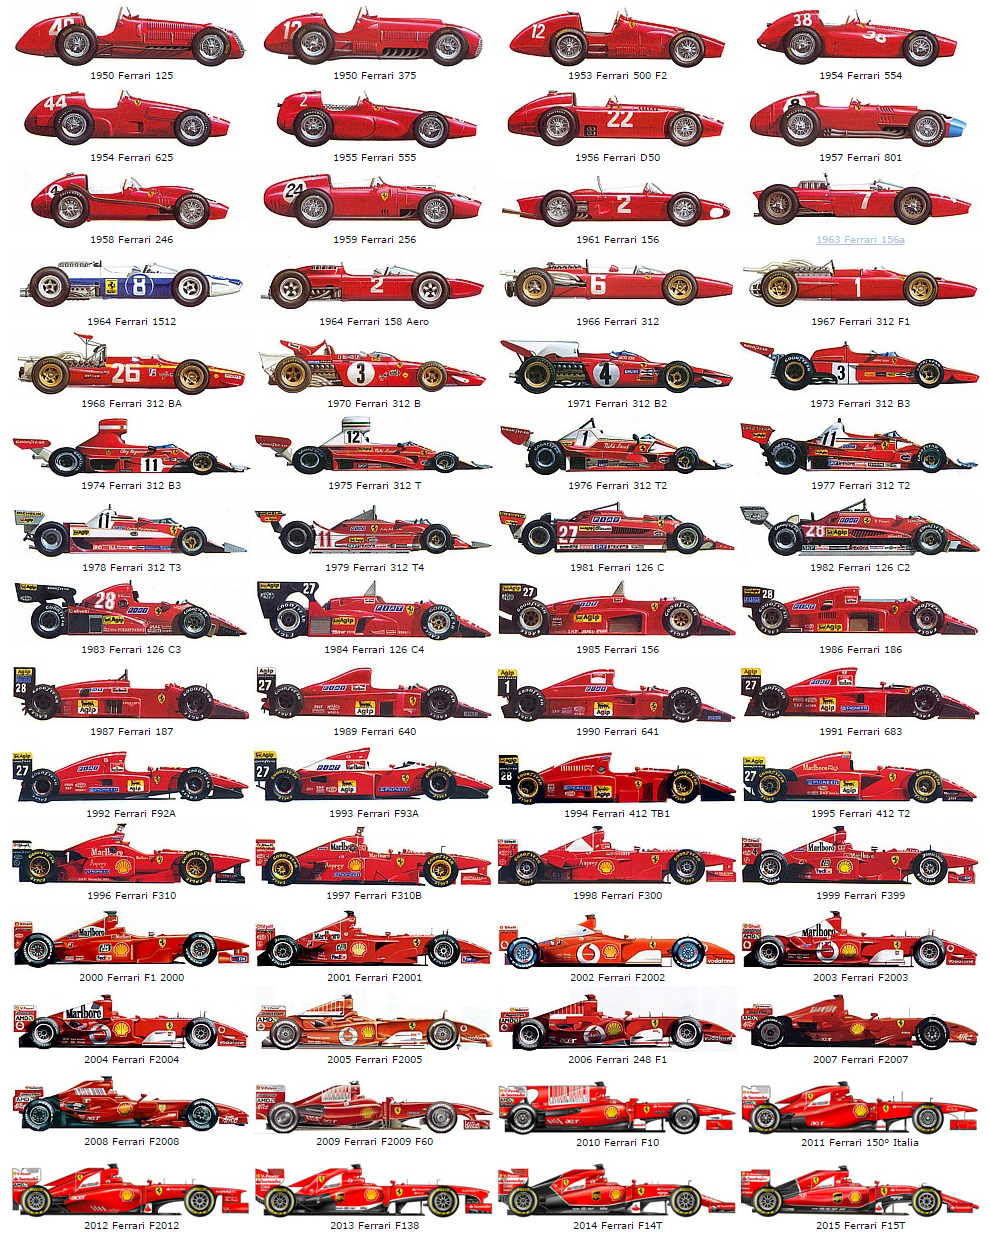 The evolution of Ferrari Grand Prix cars picture